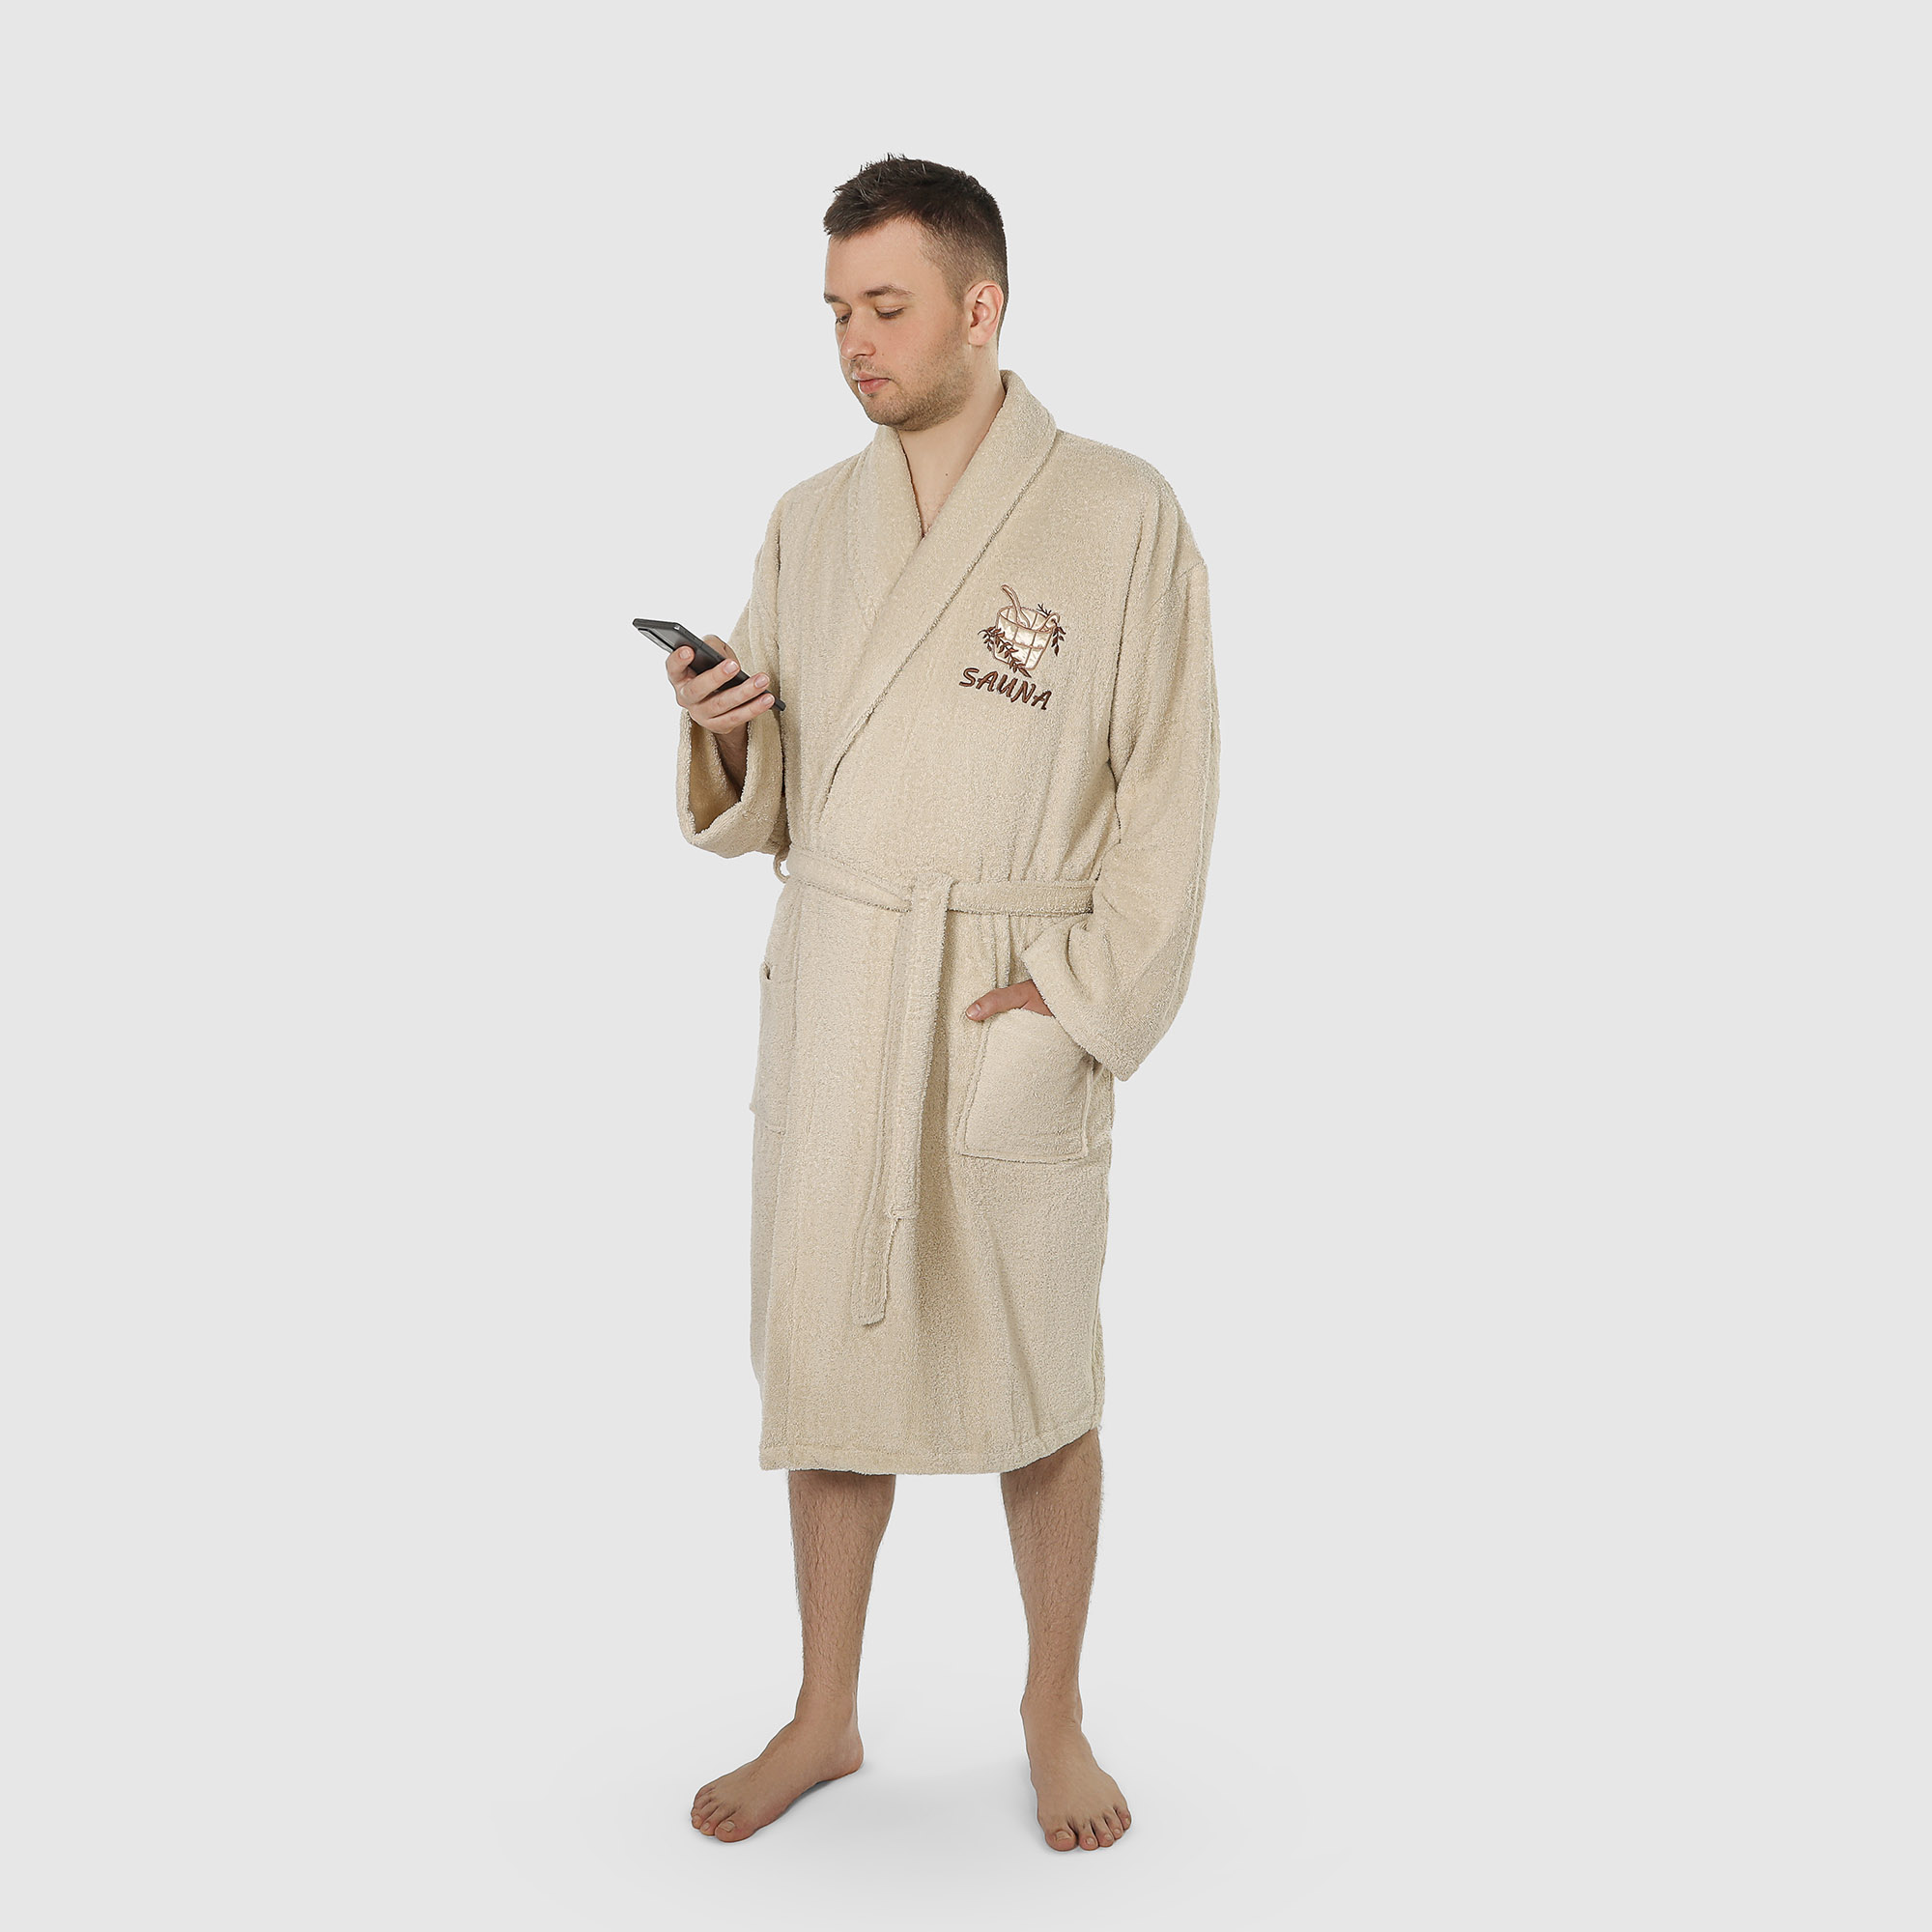 Халат мужской махровый Asil Sauna с воротником brown XL цена и фото